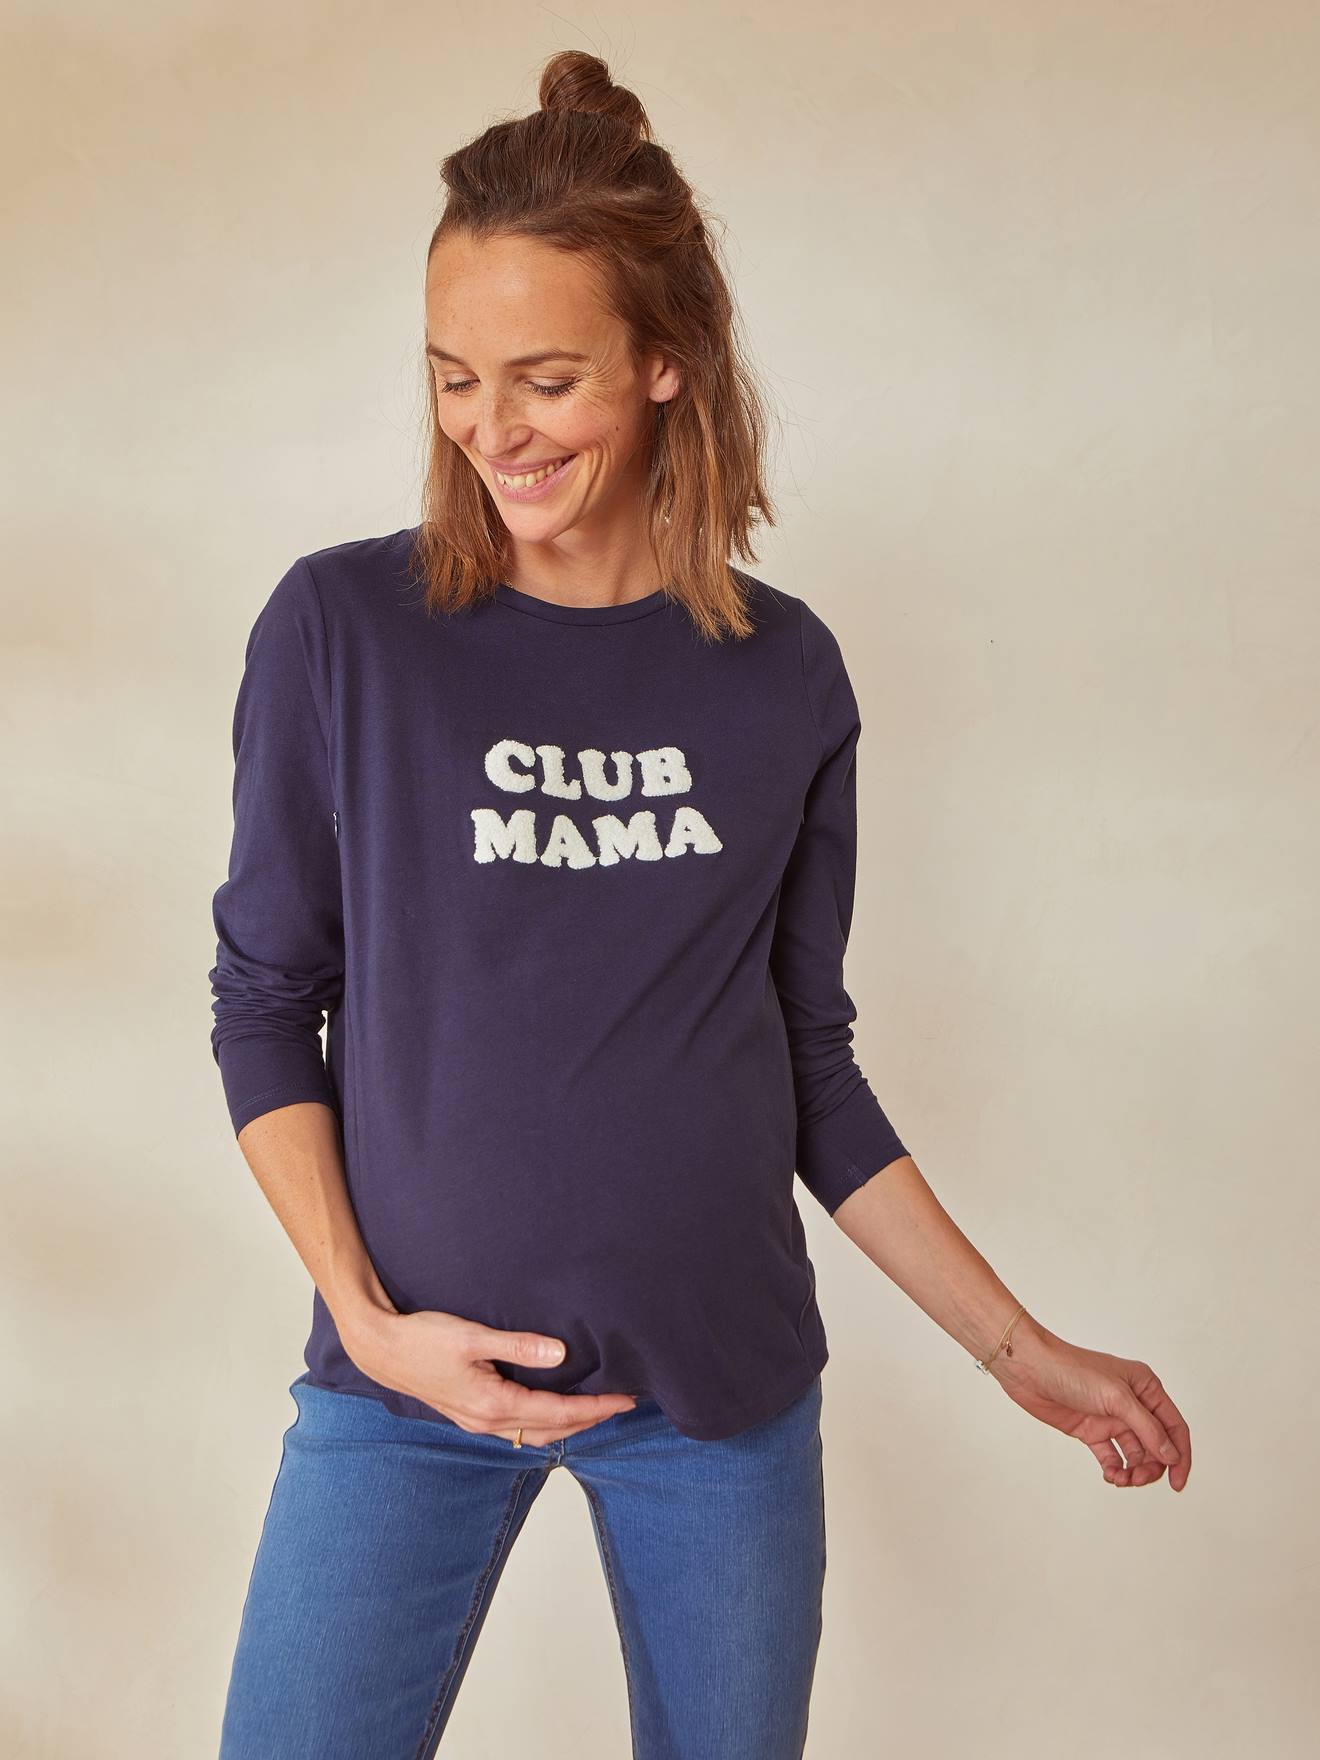 Camisola em algodão bio com mensagem, especial gravidez e amamentação azul escuro liso